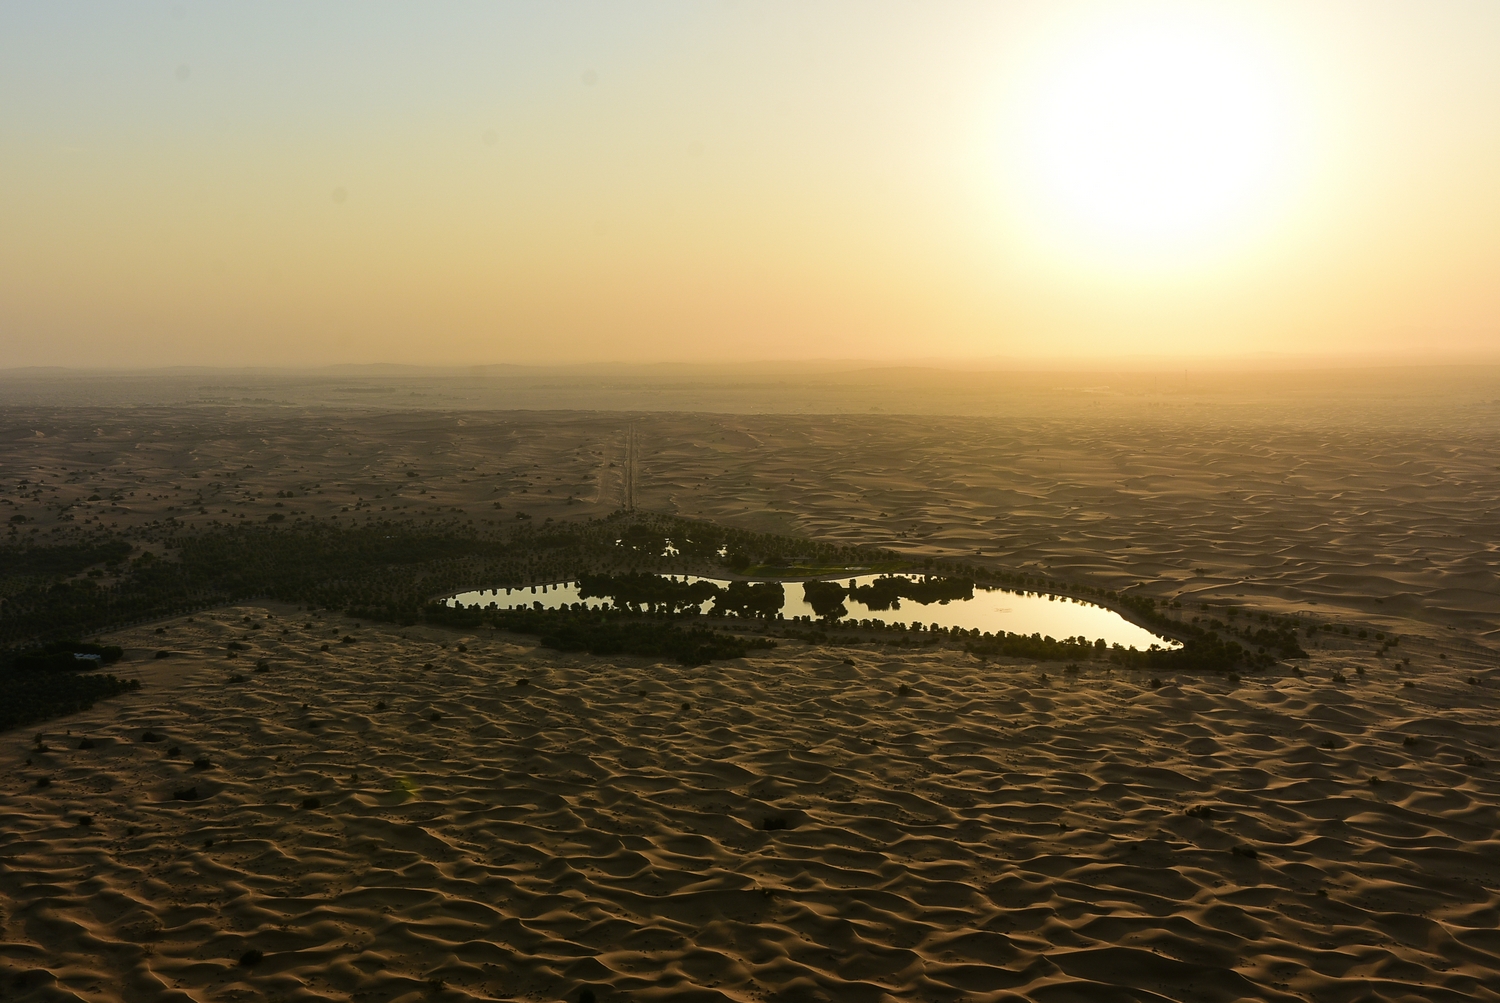 Dubai Desert Oasis